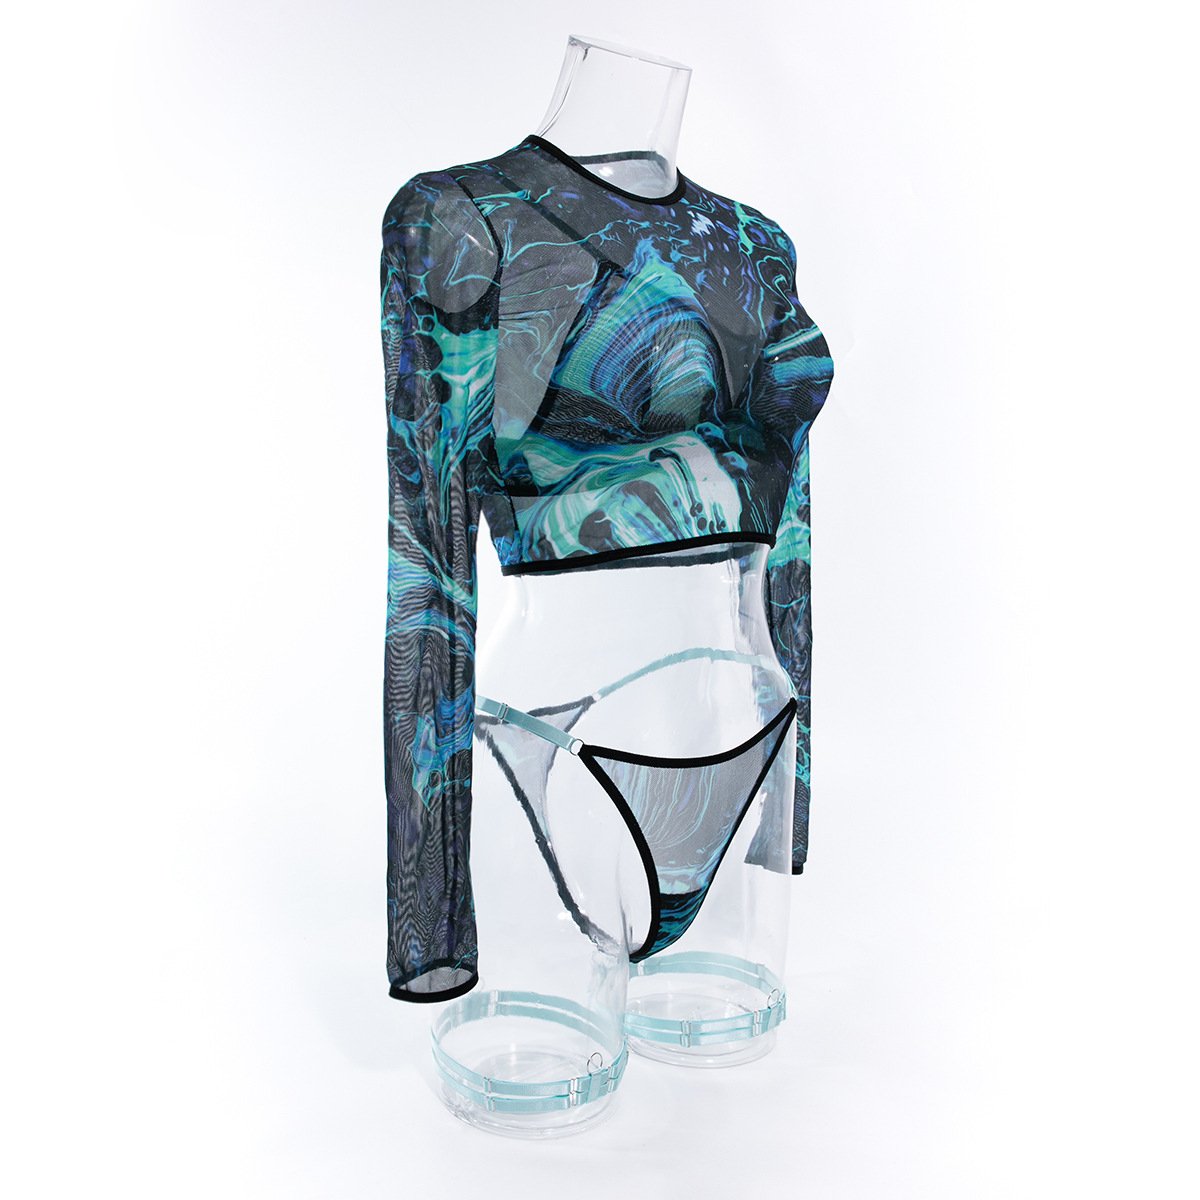 Long sleeve print mesh garter 3 piece lingerie set